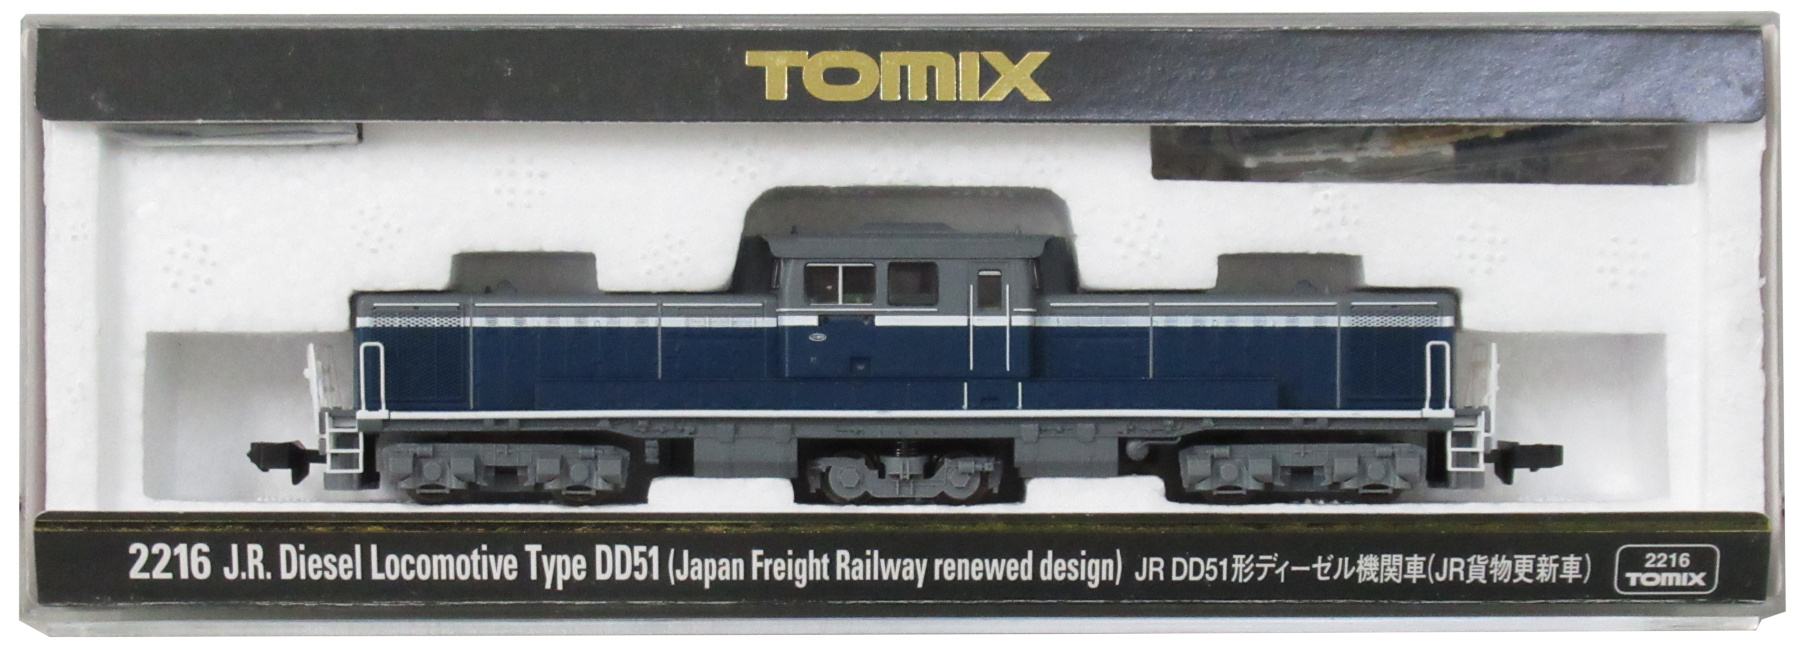 2216 JR DD51形(JR貨物更新車)